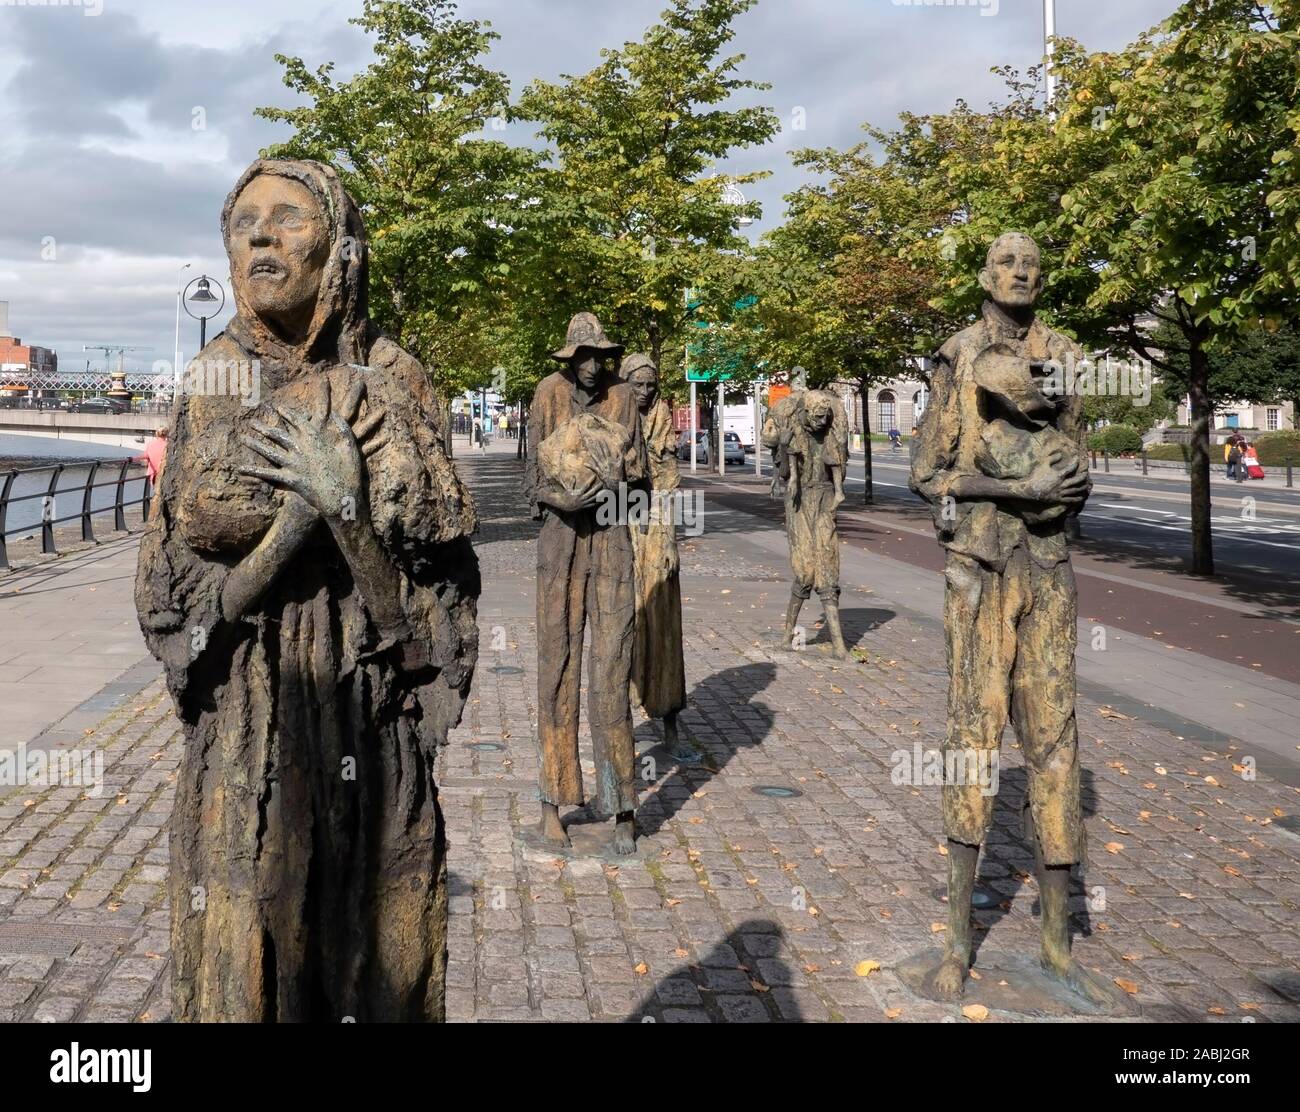 27/08/2019 - Dublin, Ireland - World Poverty Stone Stock Photo